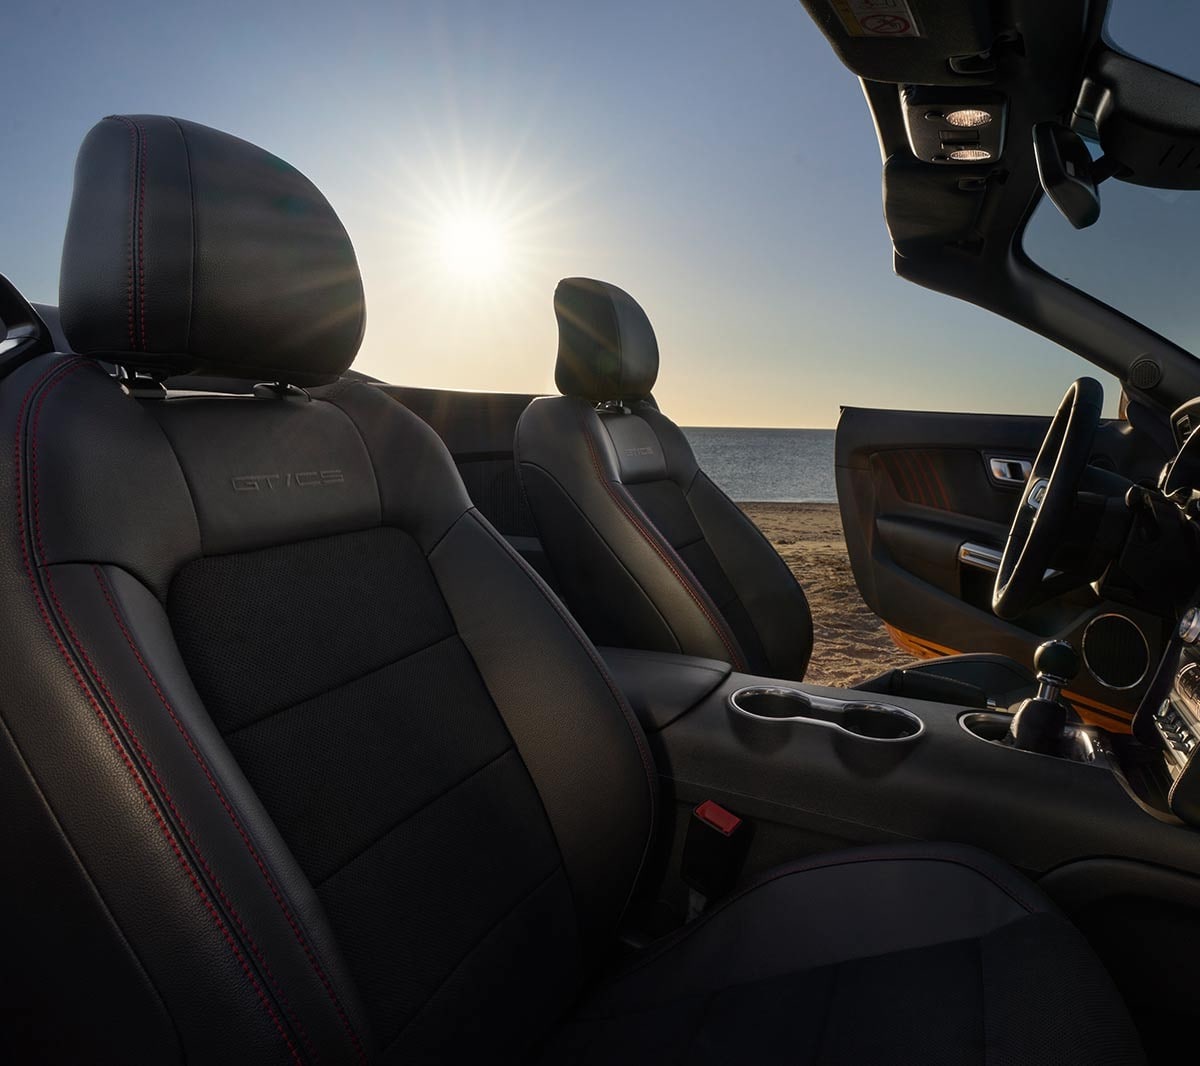 Fila de asientos delanteros Mustang GT California Special 